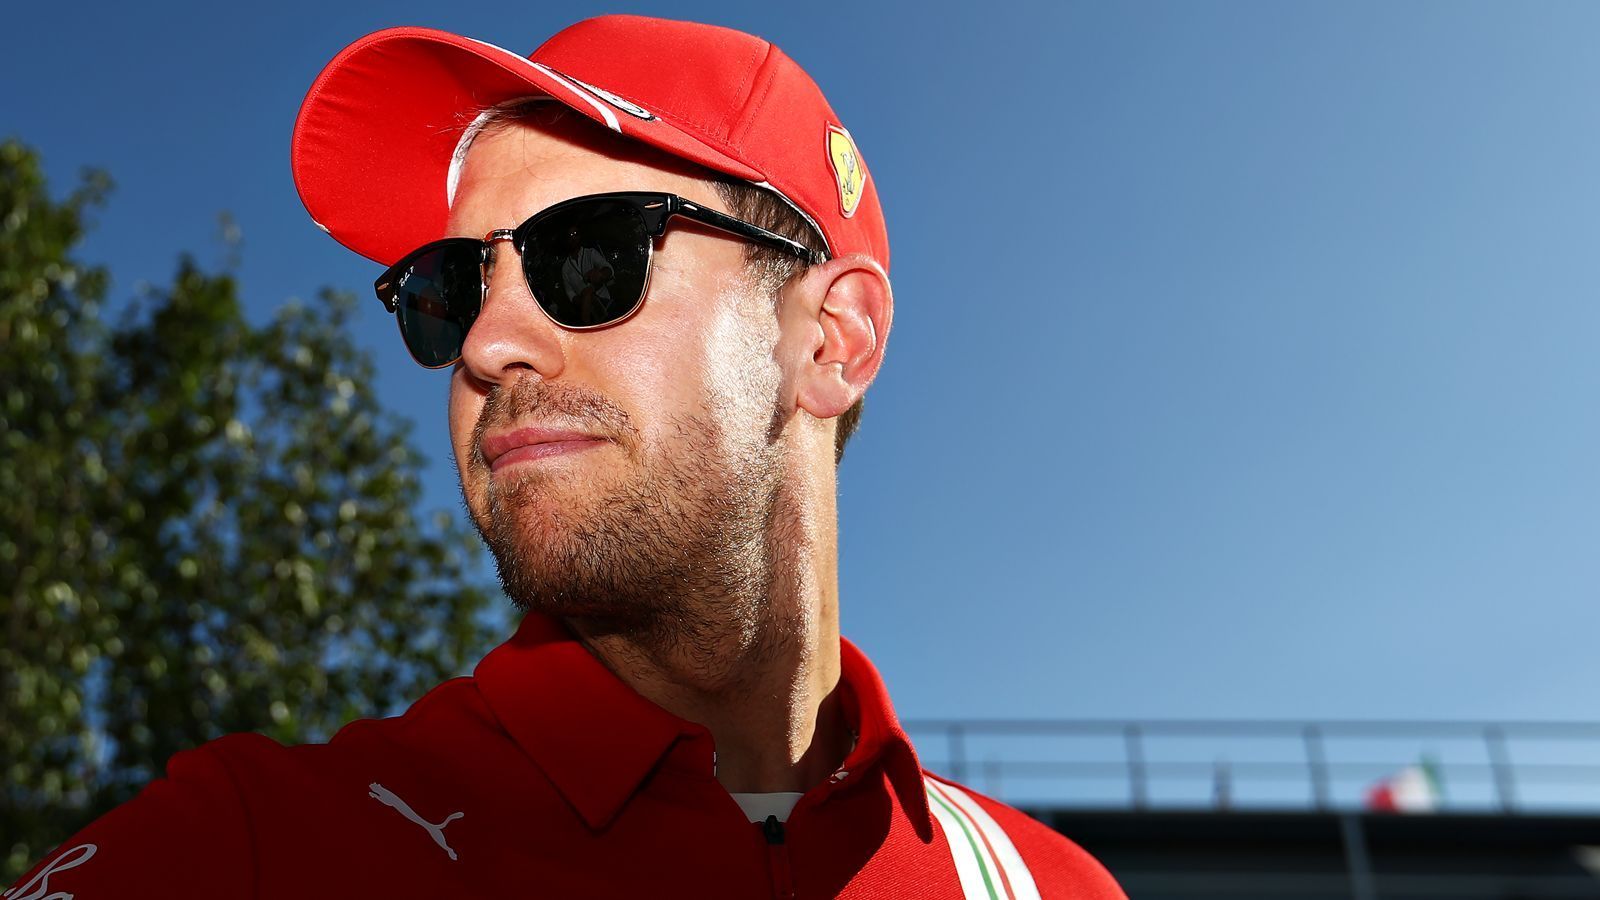 
                <strong>Rücktritt nach der Saison 2020 </strong><br>
                Eine Variante, die ebenfalls nicht unmöglich ist: Vettel beendet seine Karriere. Sollte niemand nachrücken, wäre es das erste Mal seit 1981, dass es keinen deutschen Fahrer in der Formel 1 gibt. Ein Rücktritt würde eher zu Vettels "Charakter, zu seinem Stil passen. Wäre schade für den Sport, aber für die Person Vettel sicher die beste Lösung, sofern kein siegfähiges Team zur Verfügung steht", sagte Red Bulls Motorsportberater Dr. Helmut Marko.
              